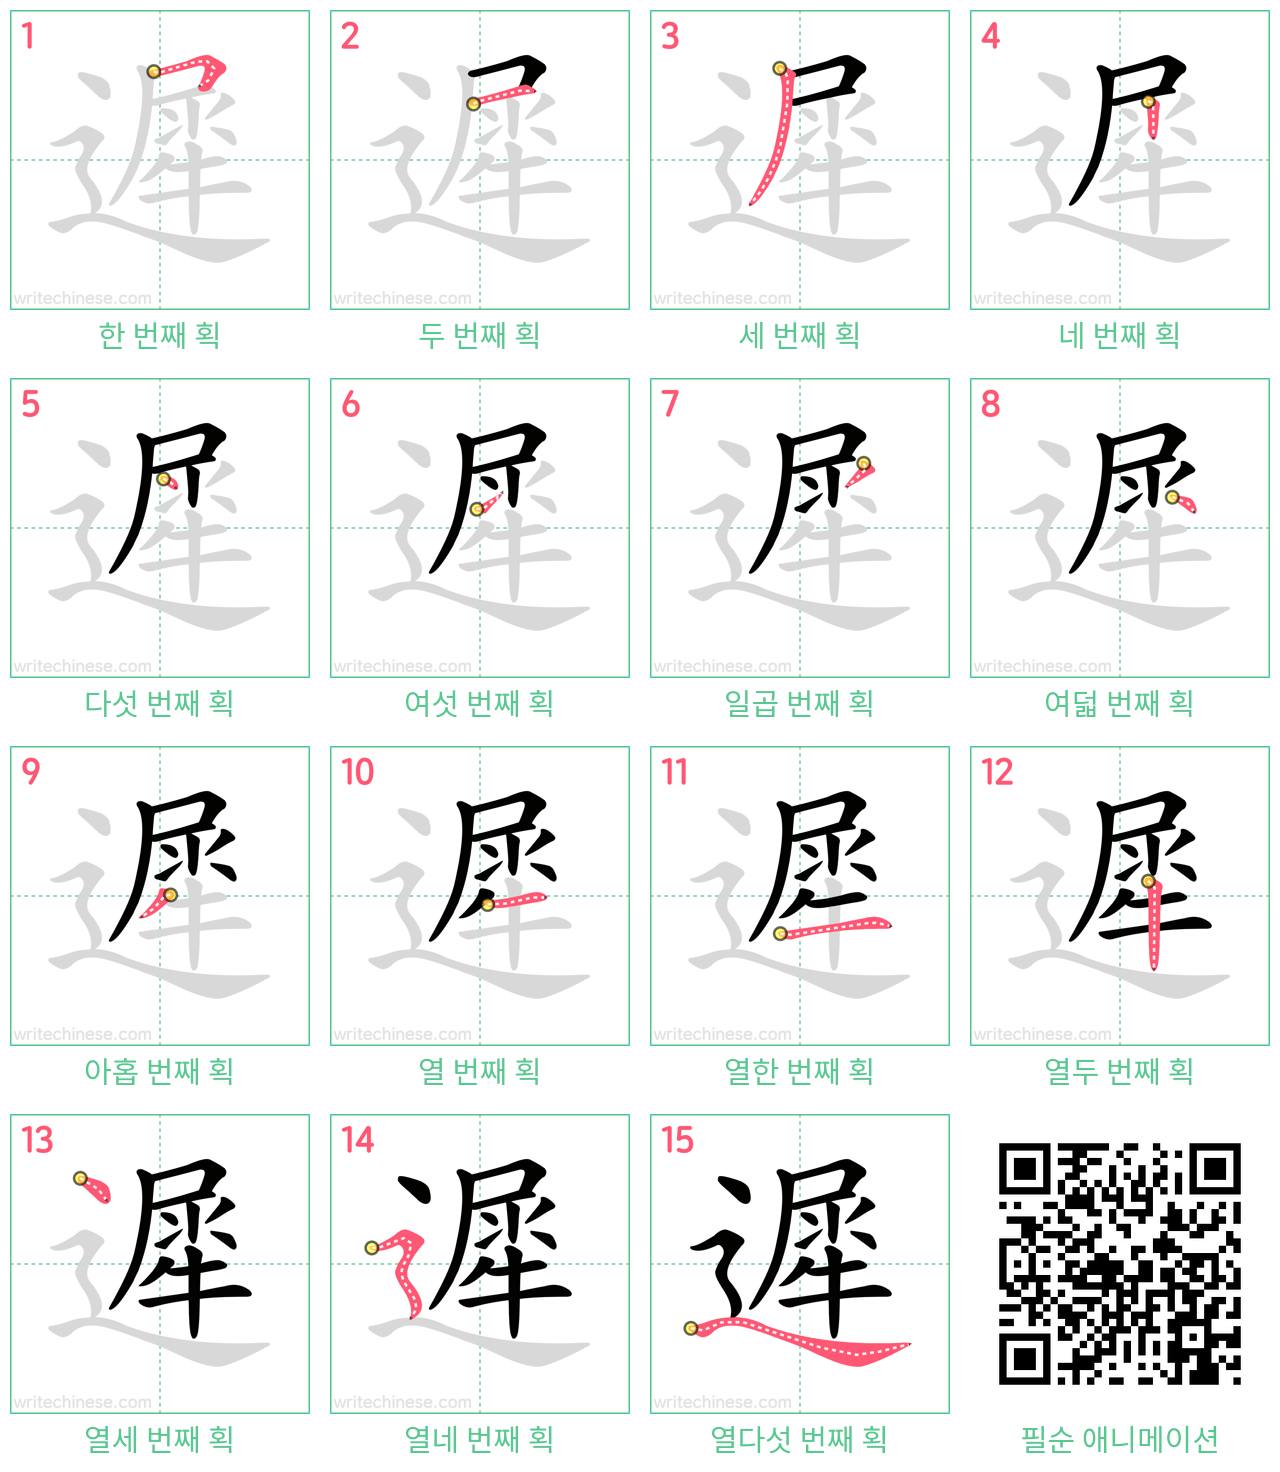 遲 step-by-step stroke order diagrams